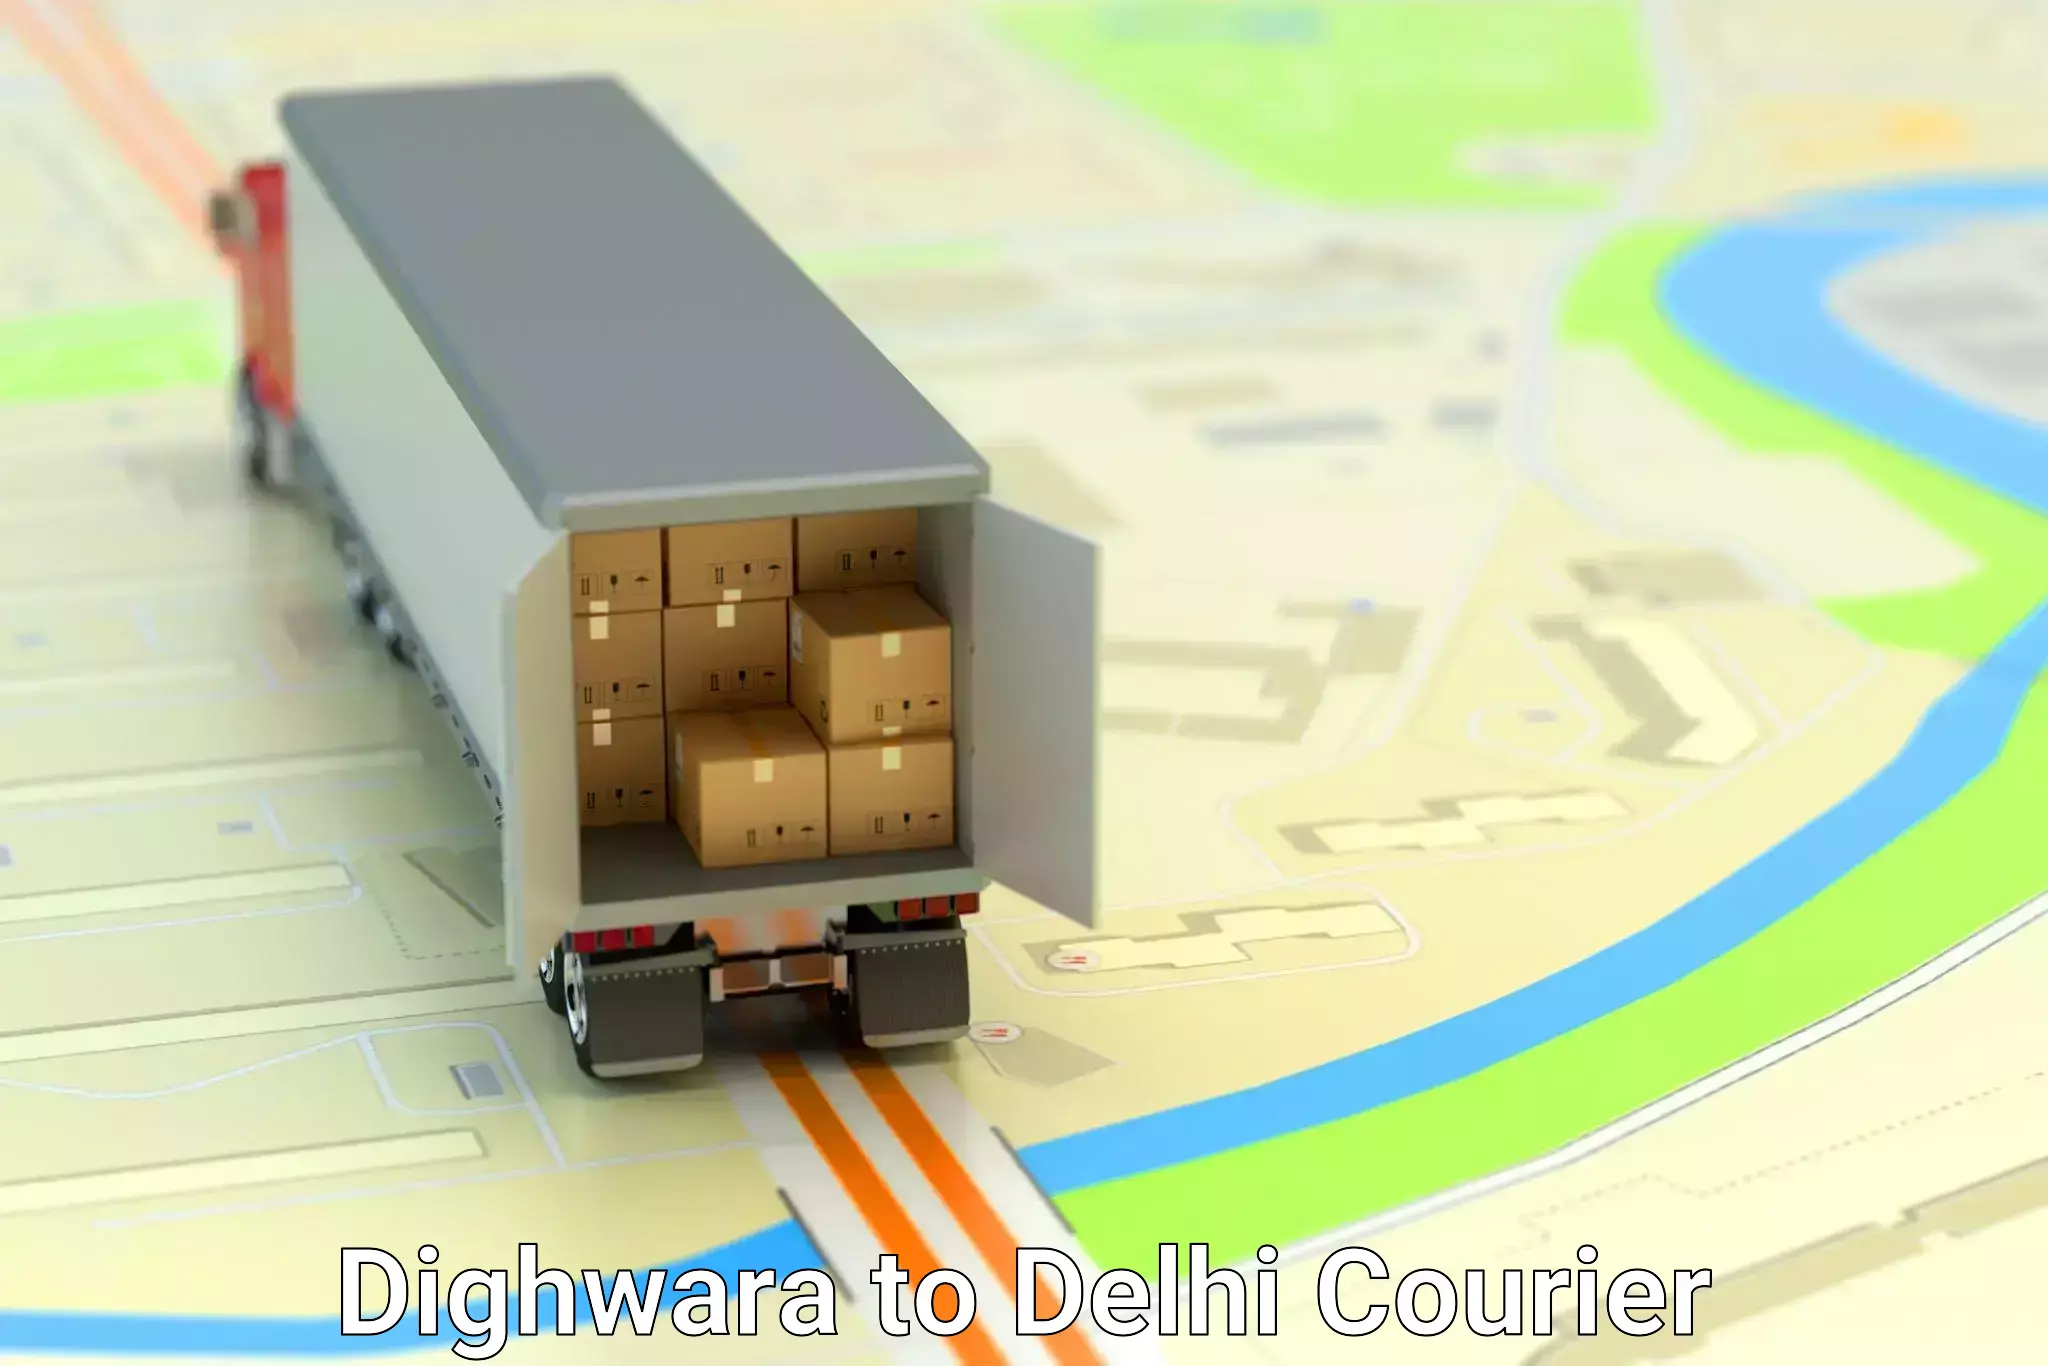 Expert furniture movers in Dighwara to Ramesh Nagar